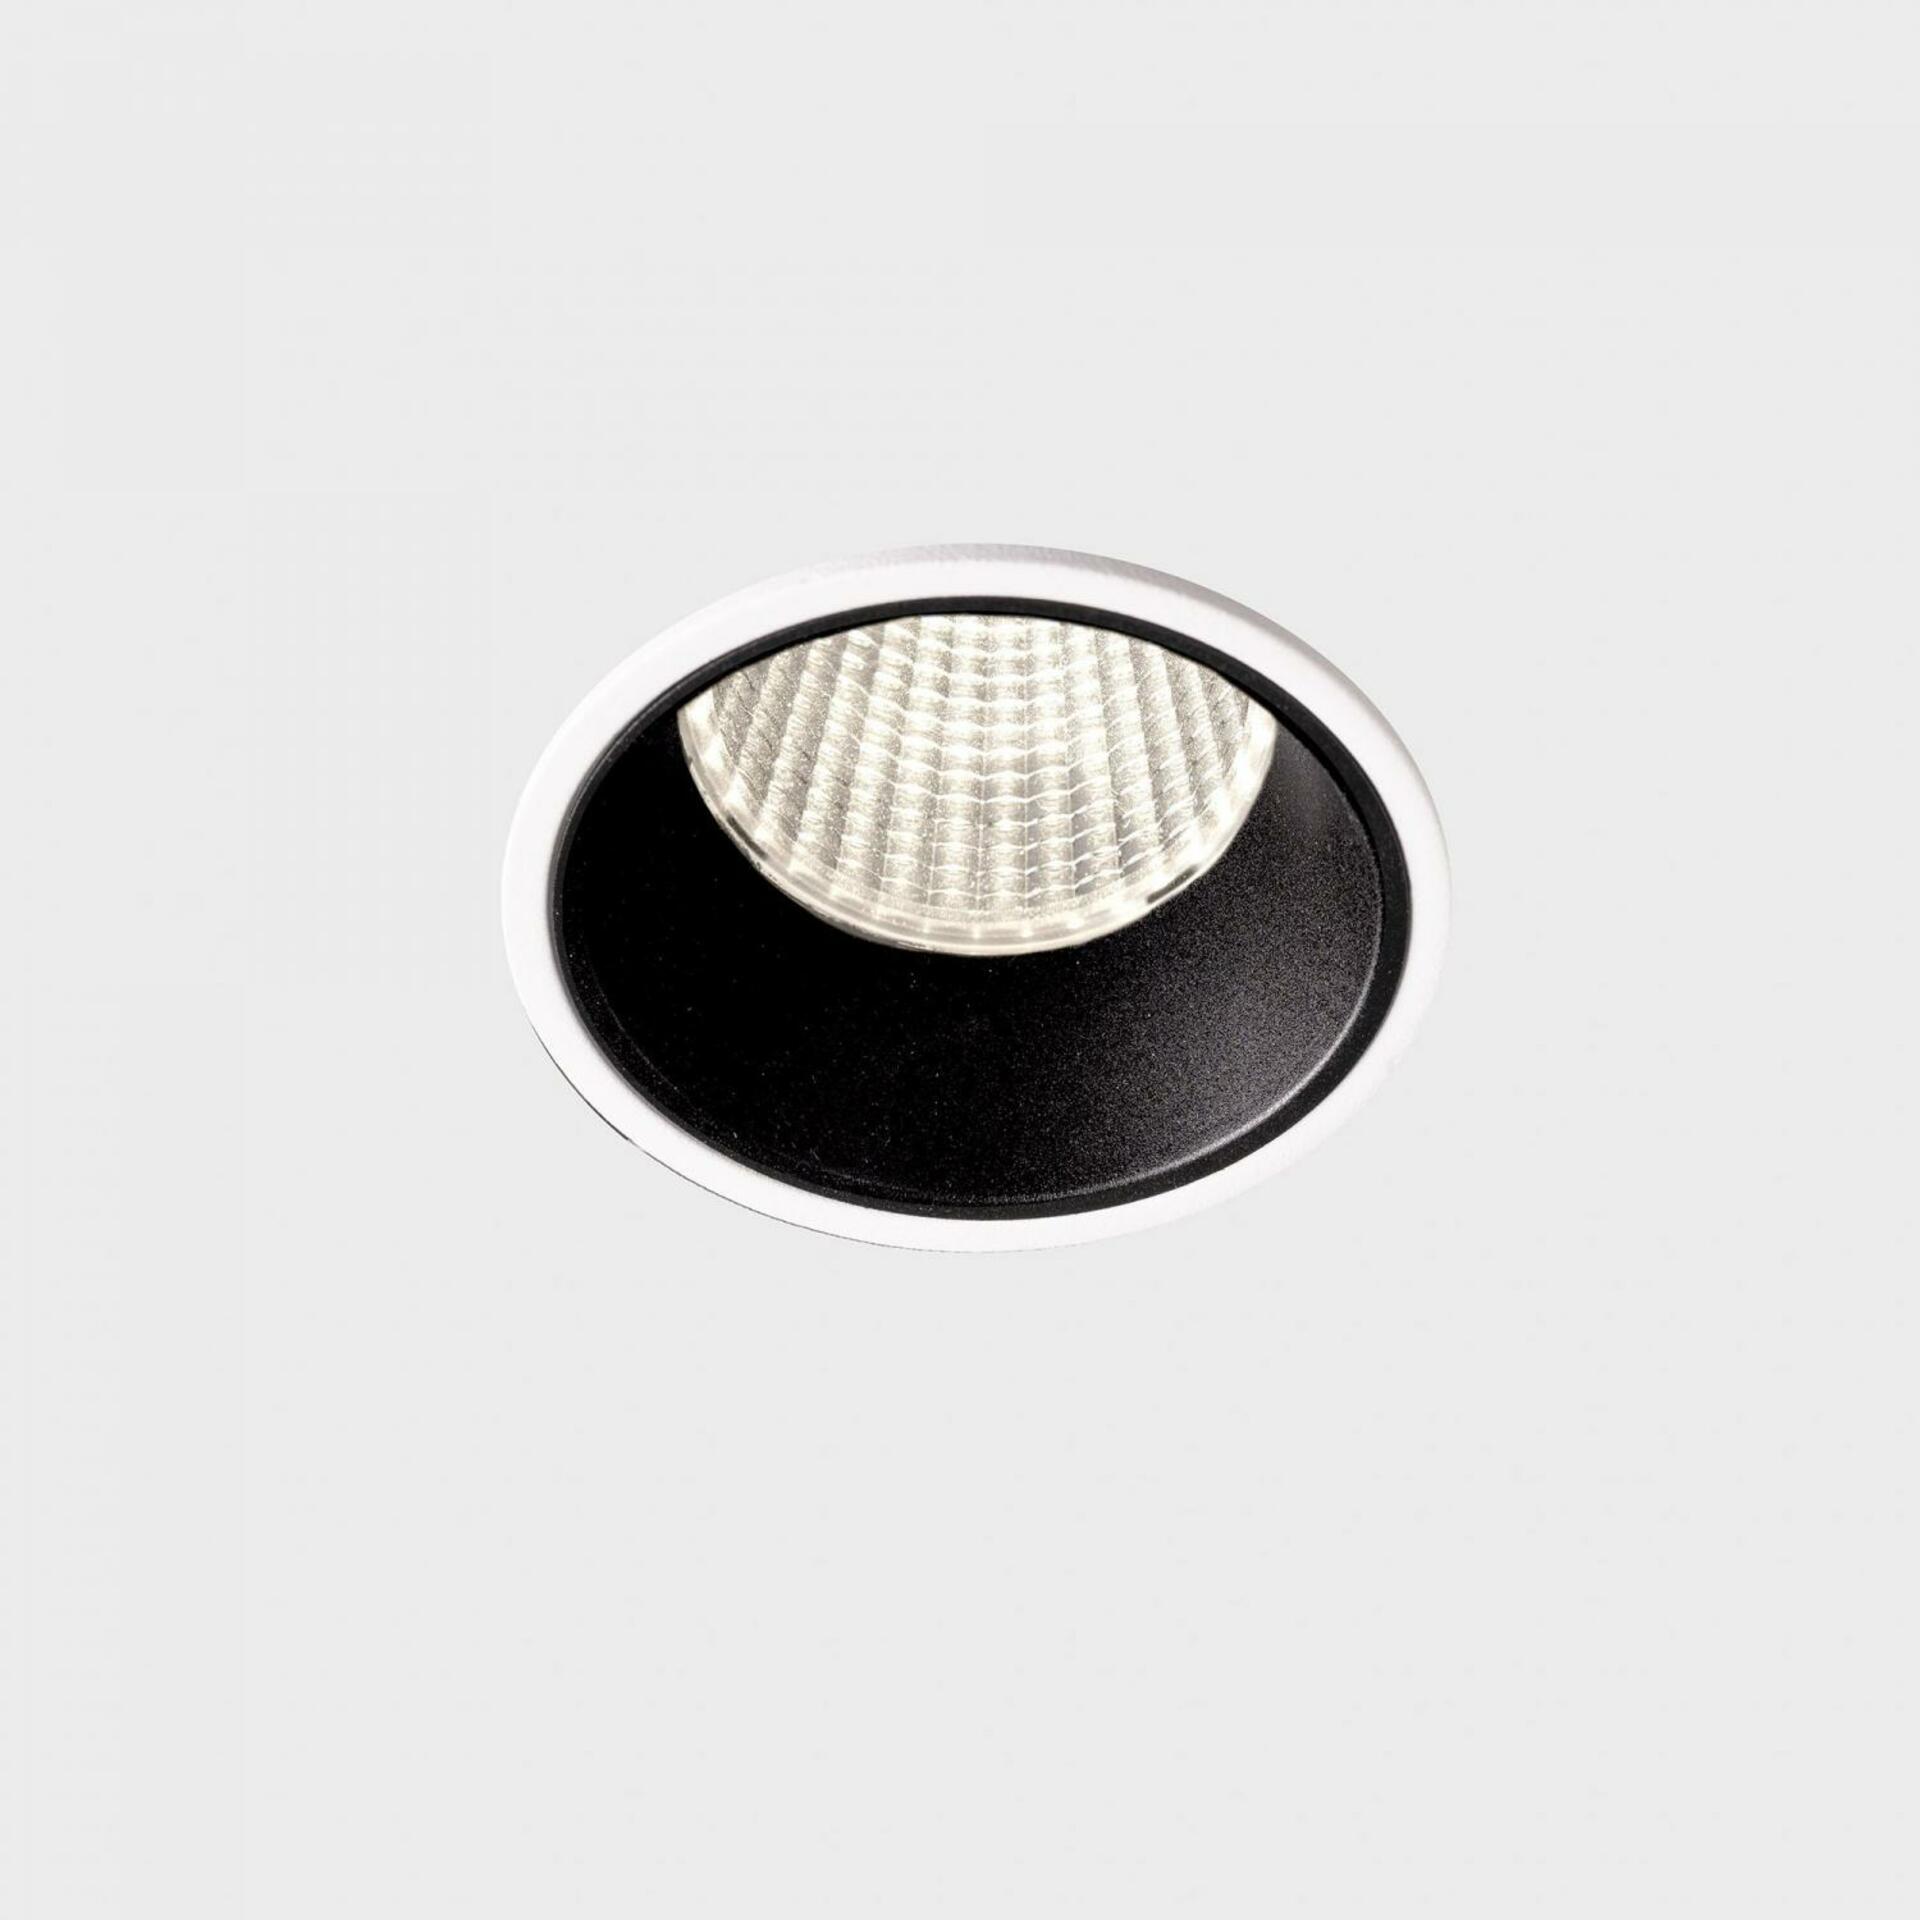 KOHL LIGHTING KOHL-Lighting VERSUS zapuštěné svítidlo s rámečkem pr. 60 mm bílá-černá 38° 5 W CRI 80 3000K 1.10V